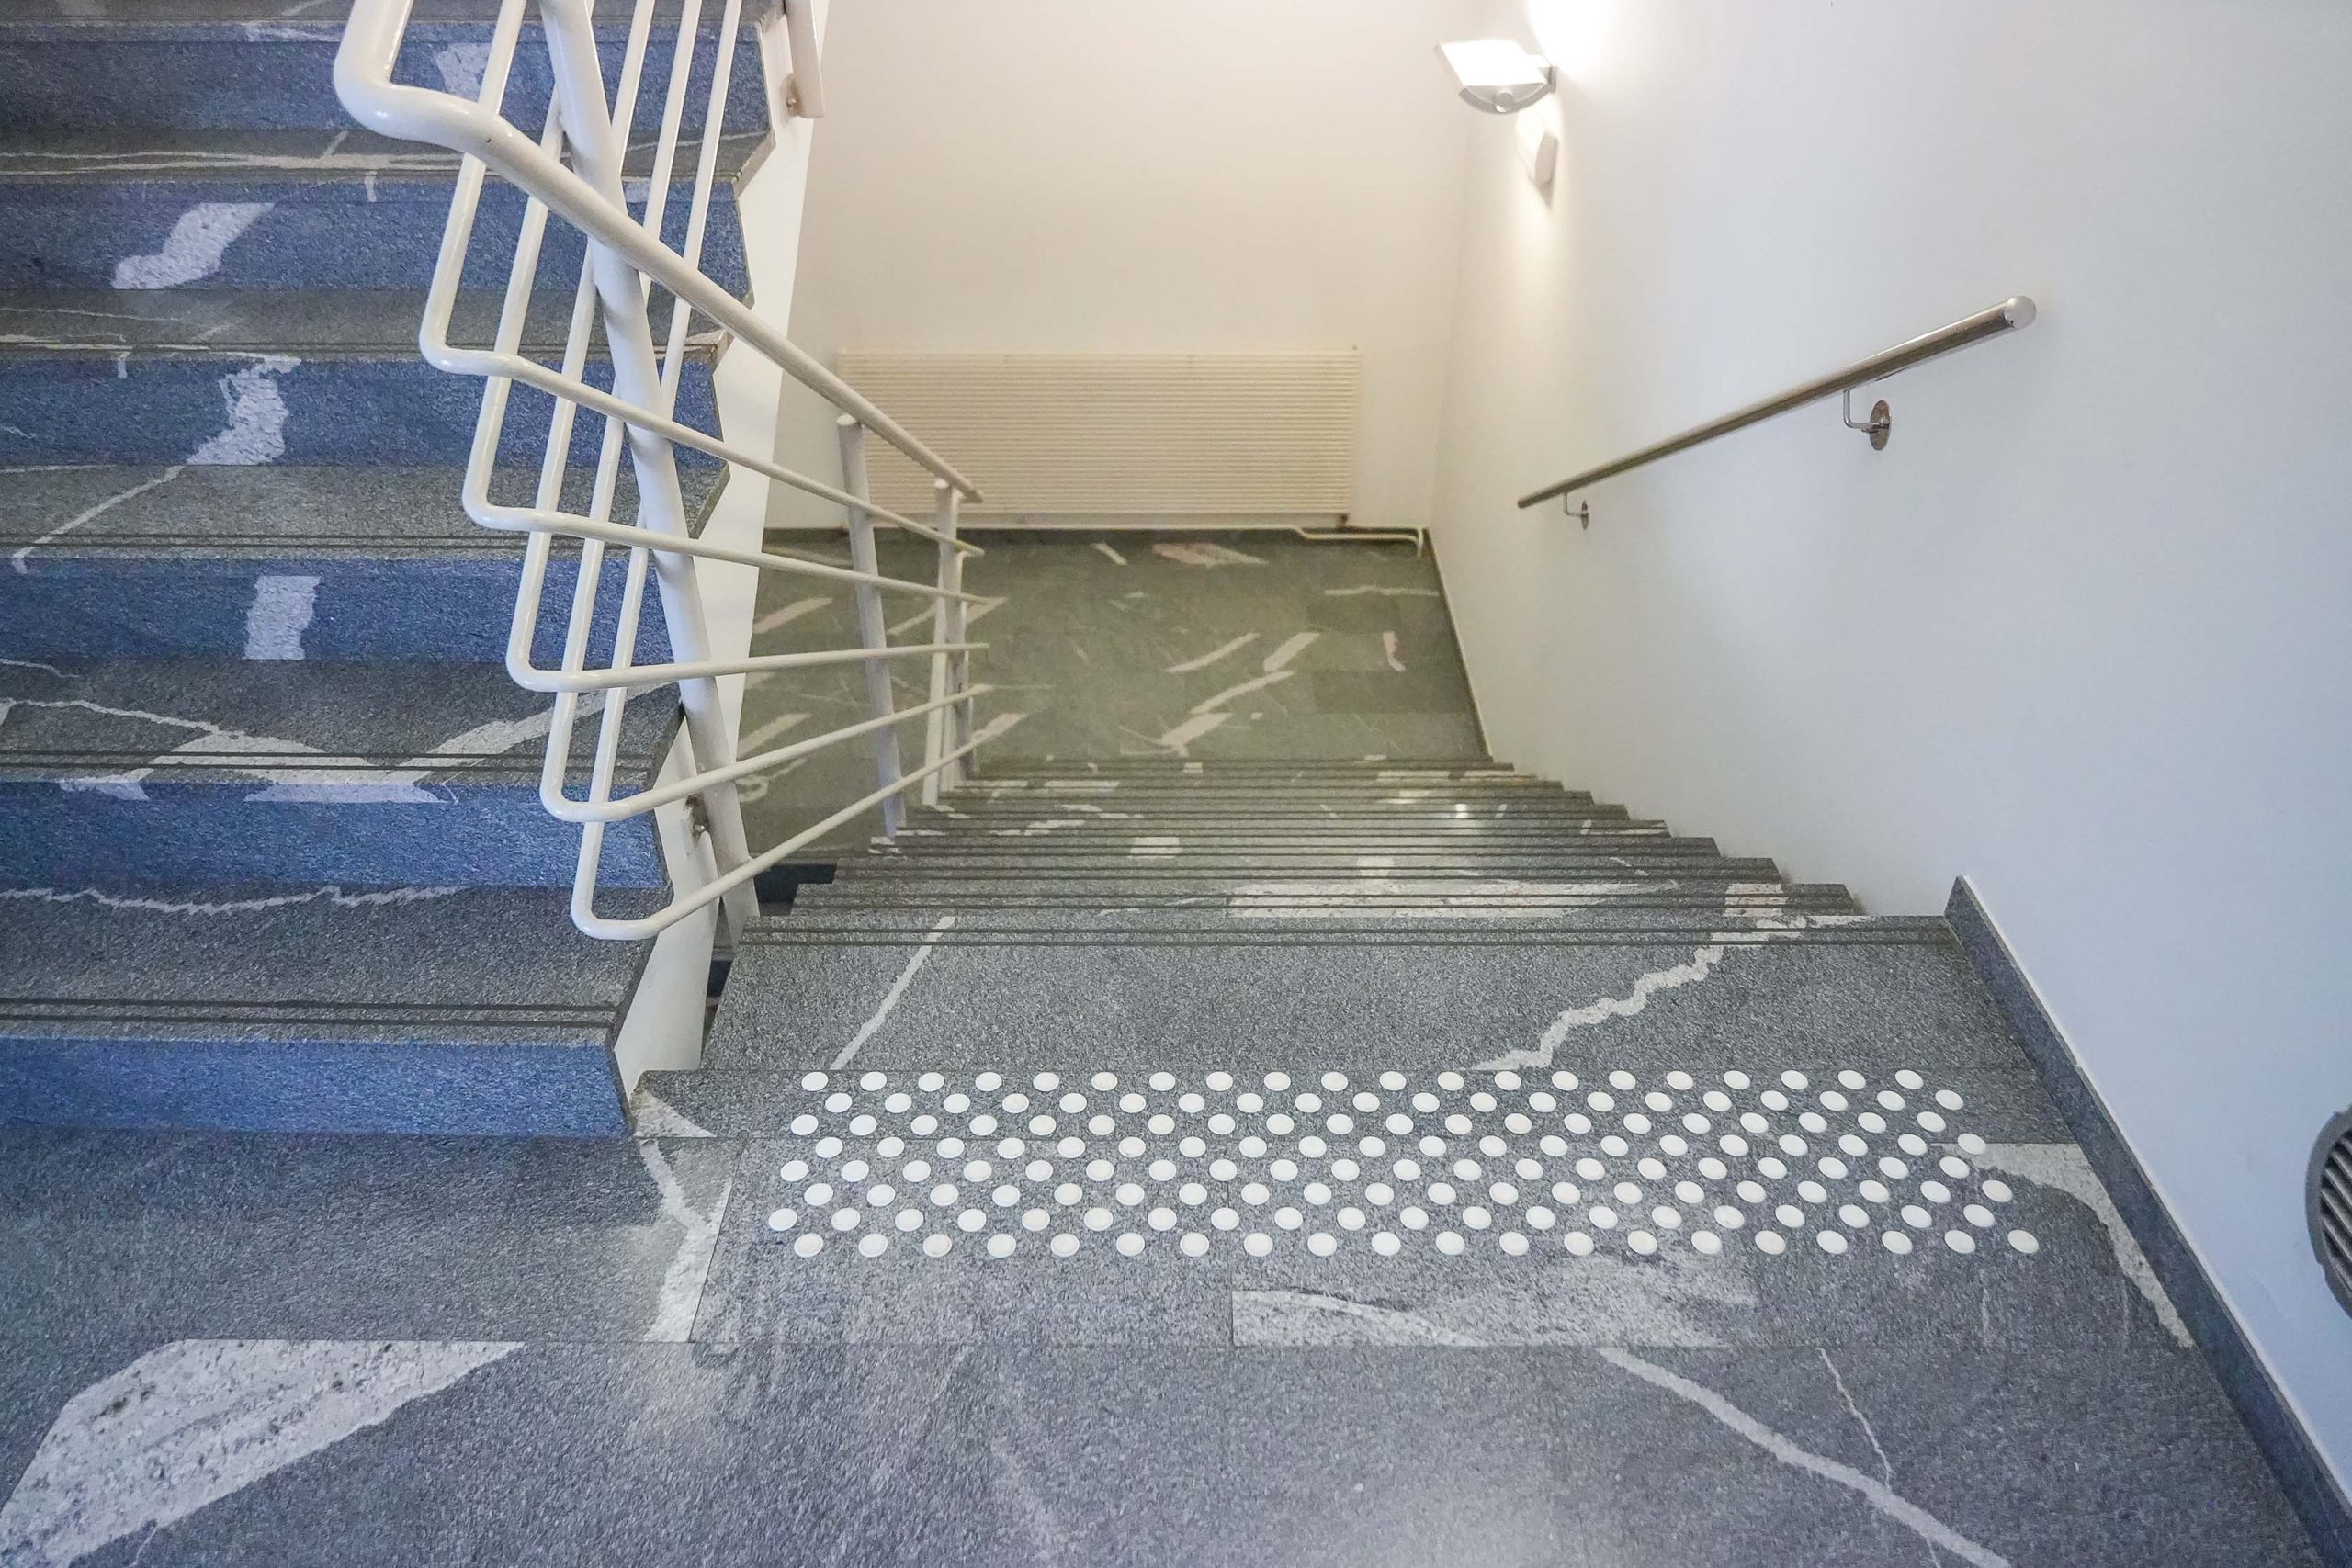 Prikaz belih talno taktilnih oznak na stopnišču- dostopnost objekta